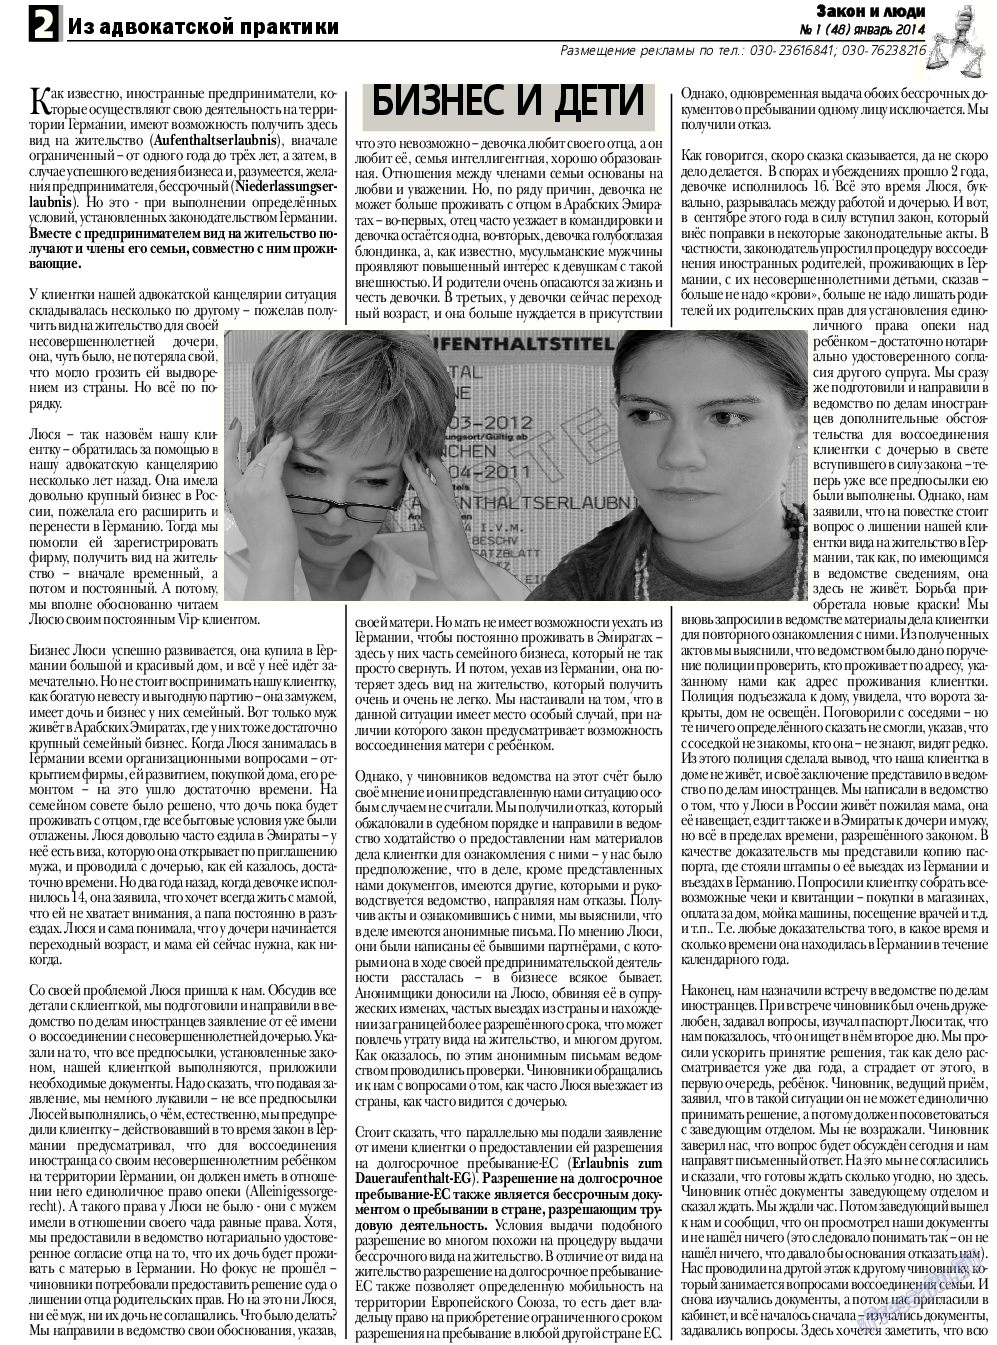 Закон и люди, газета. 2014 №1 стр.2